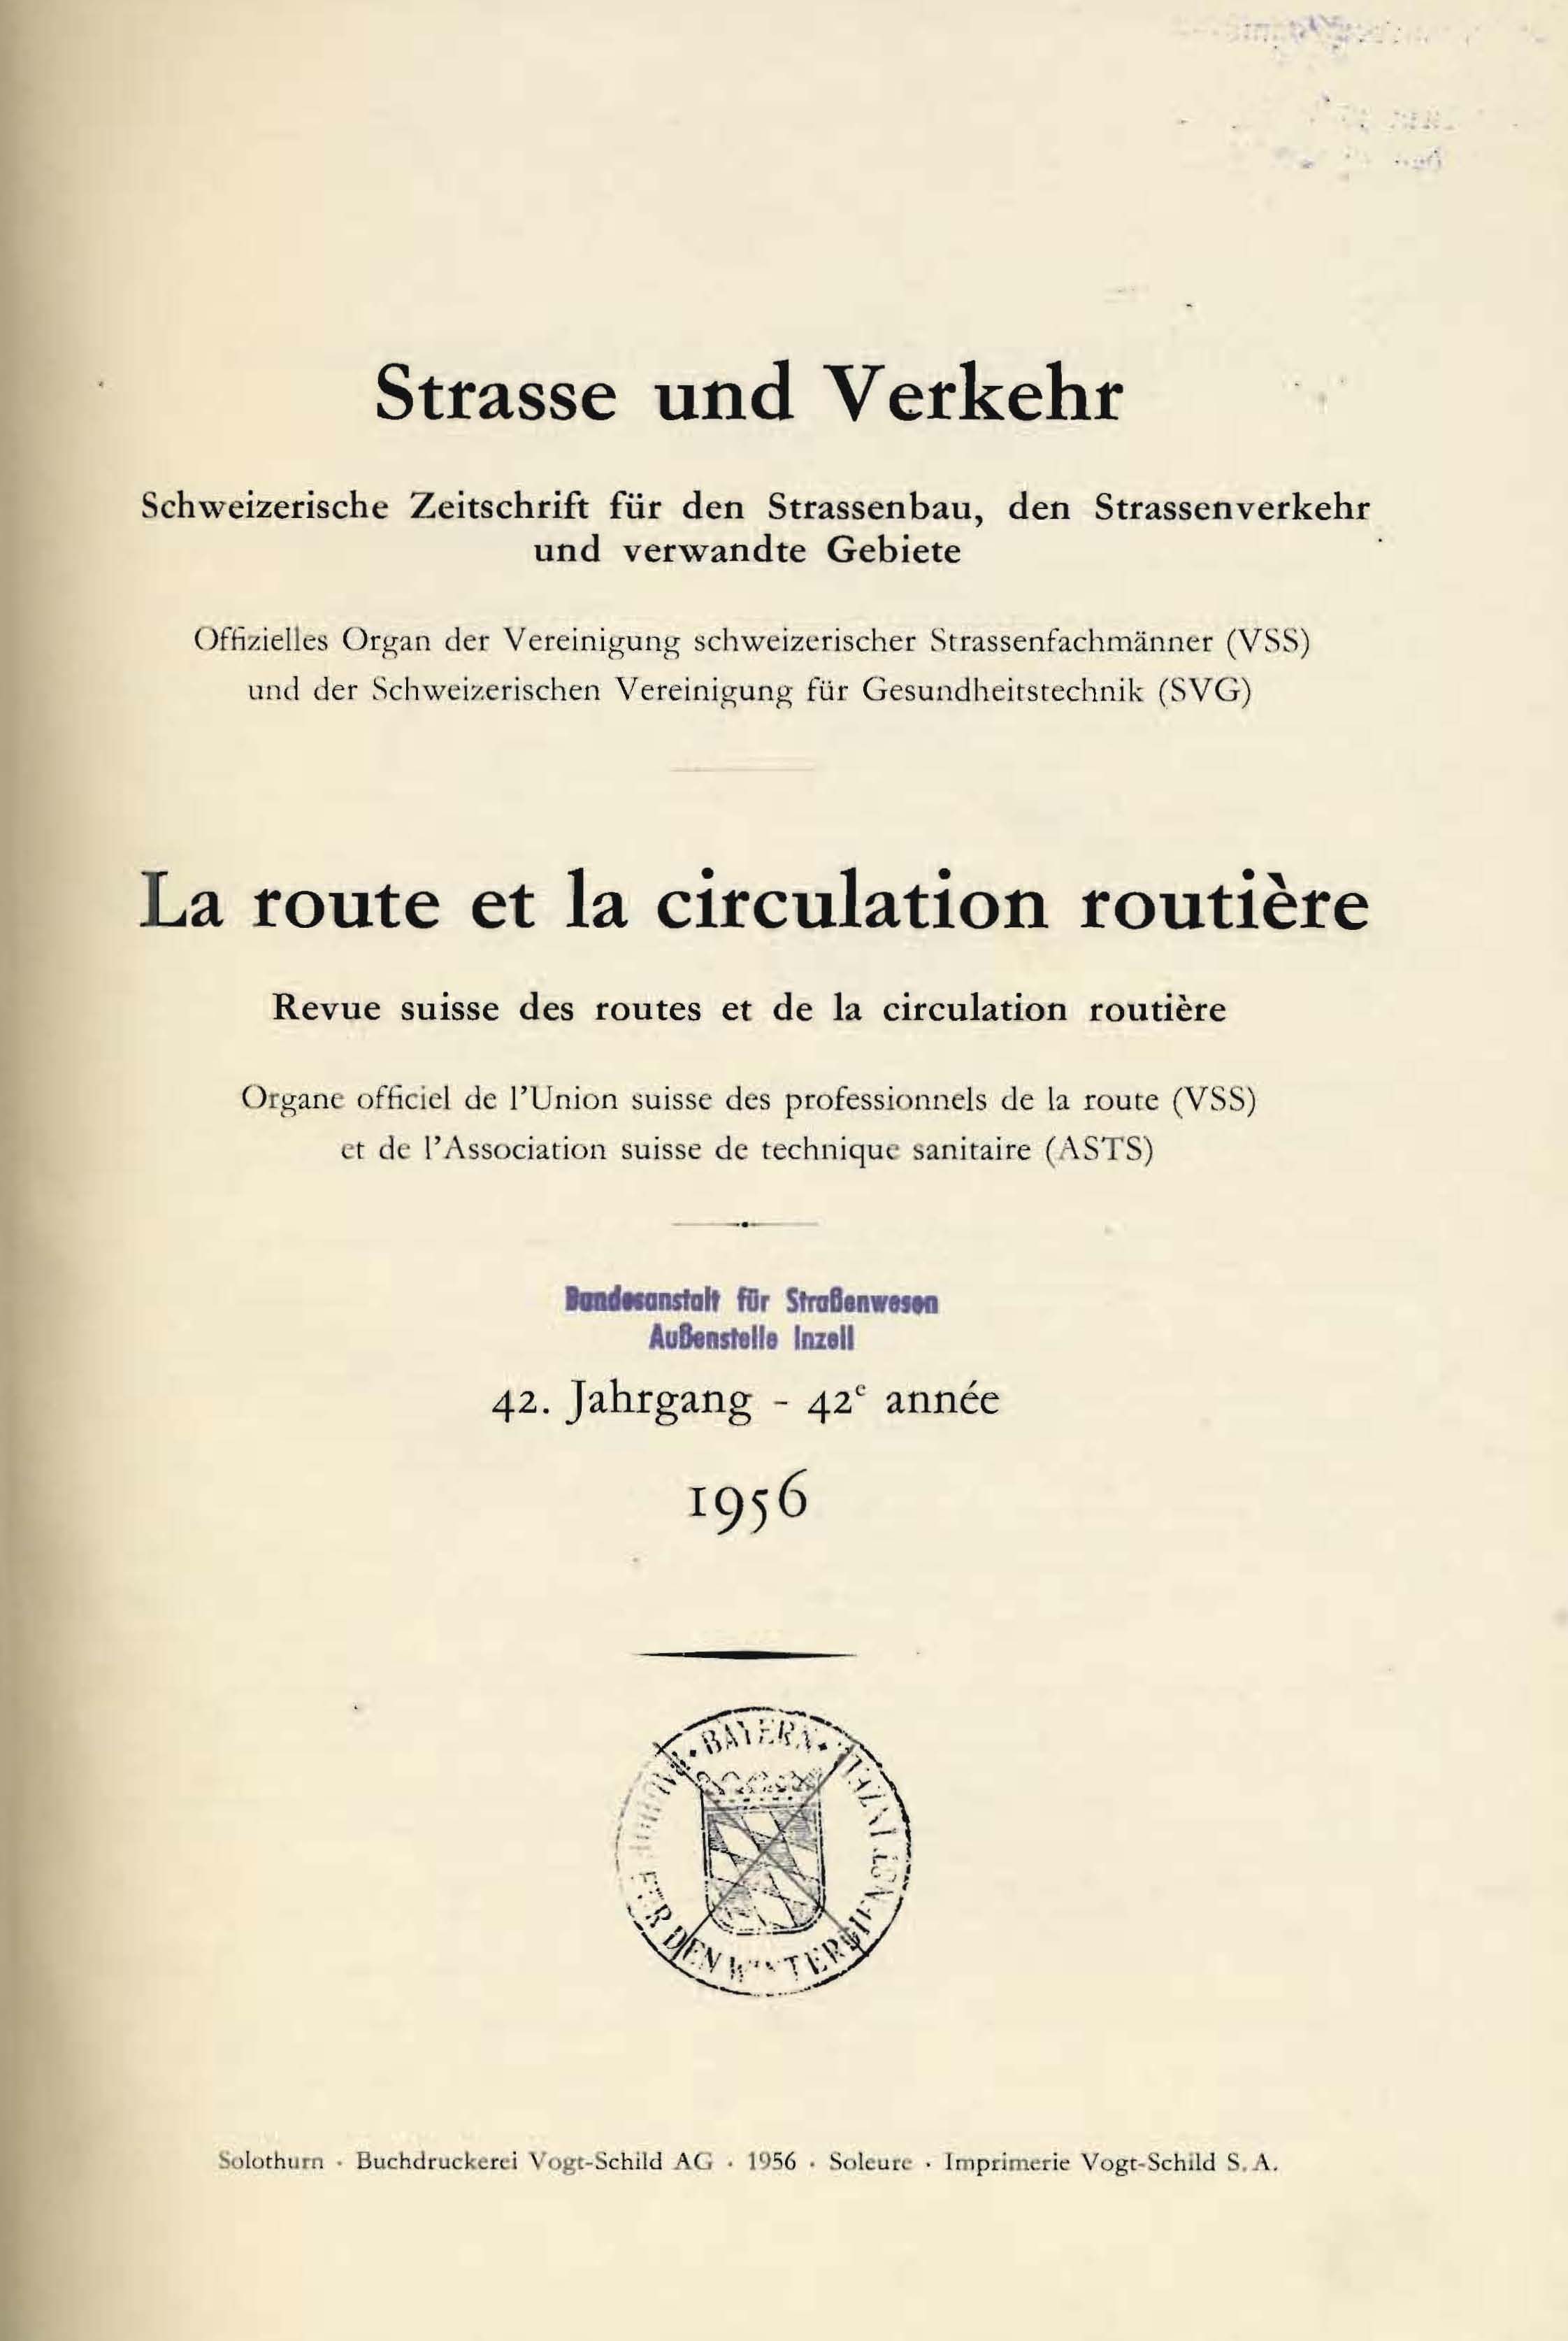 Strasse und Verkehr, 42. Jahrgang 1956